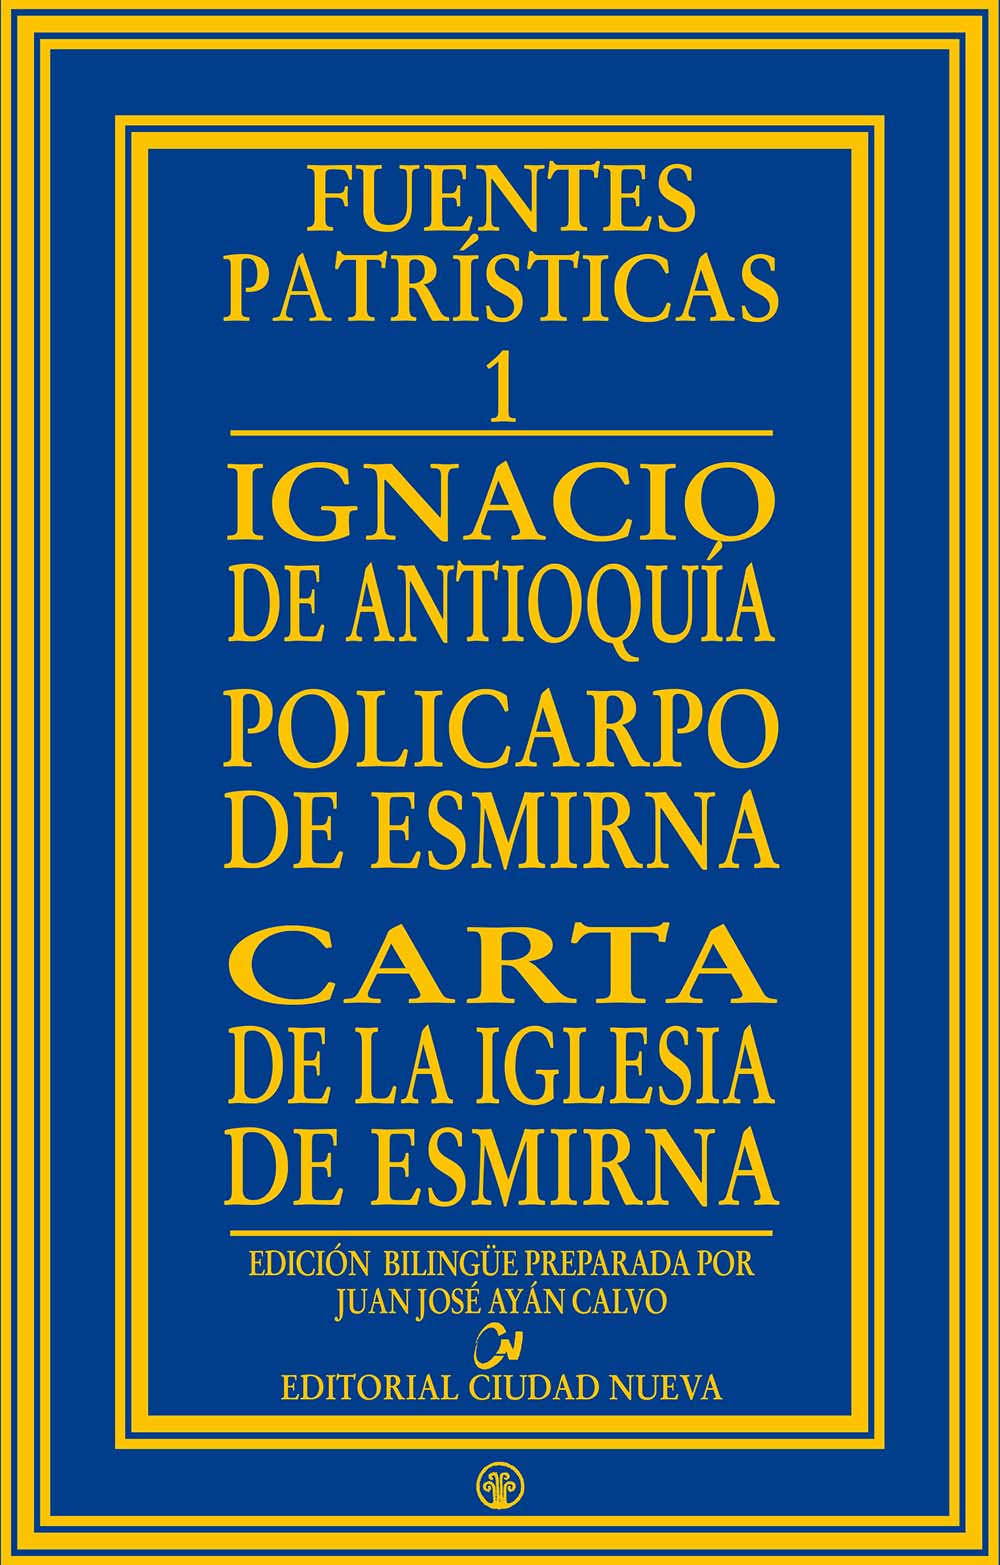 Ignacio de Antioquia - Policarpo de Esmirna - Carta de la Iglesia de  EsmirnaEditorial Ciudad Nueva